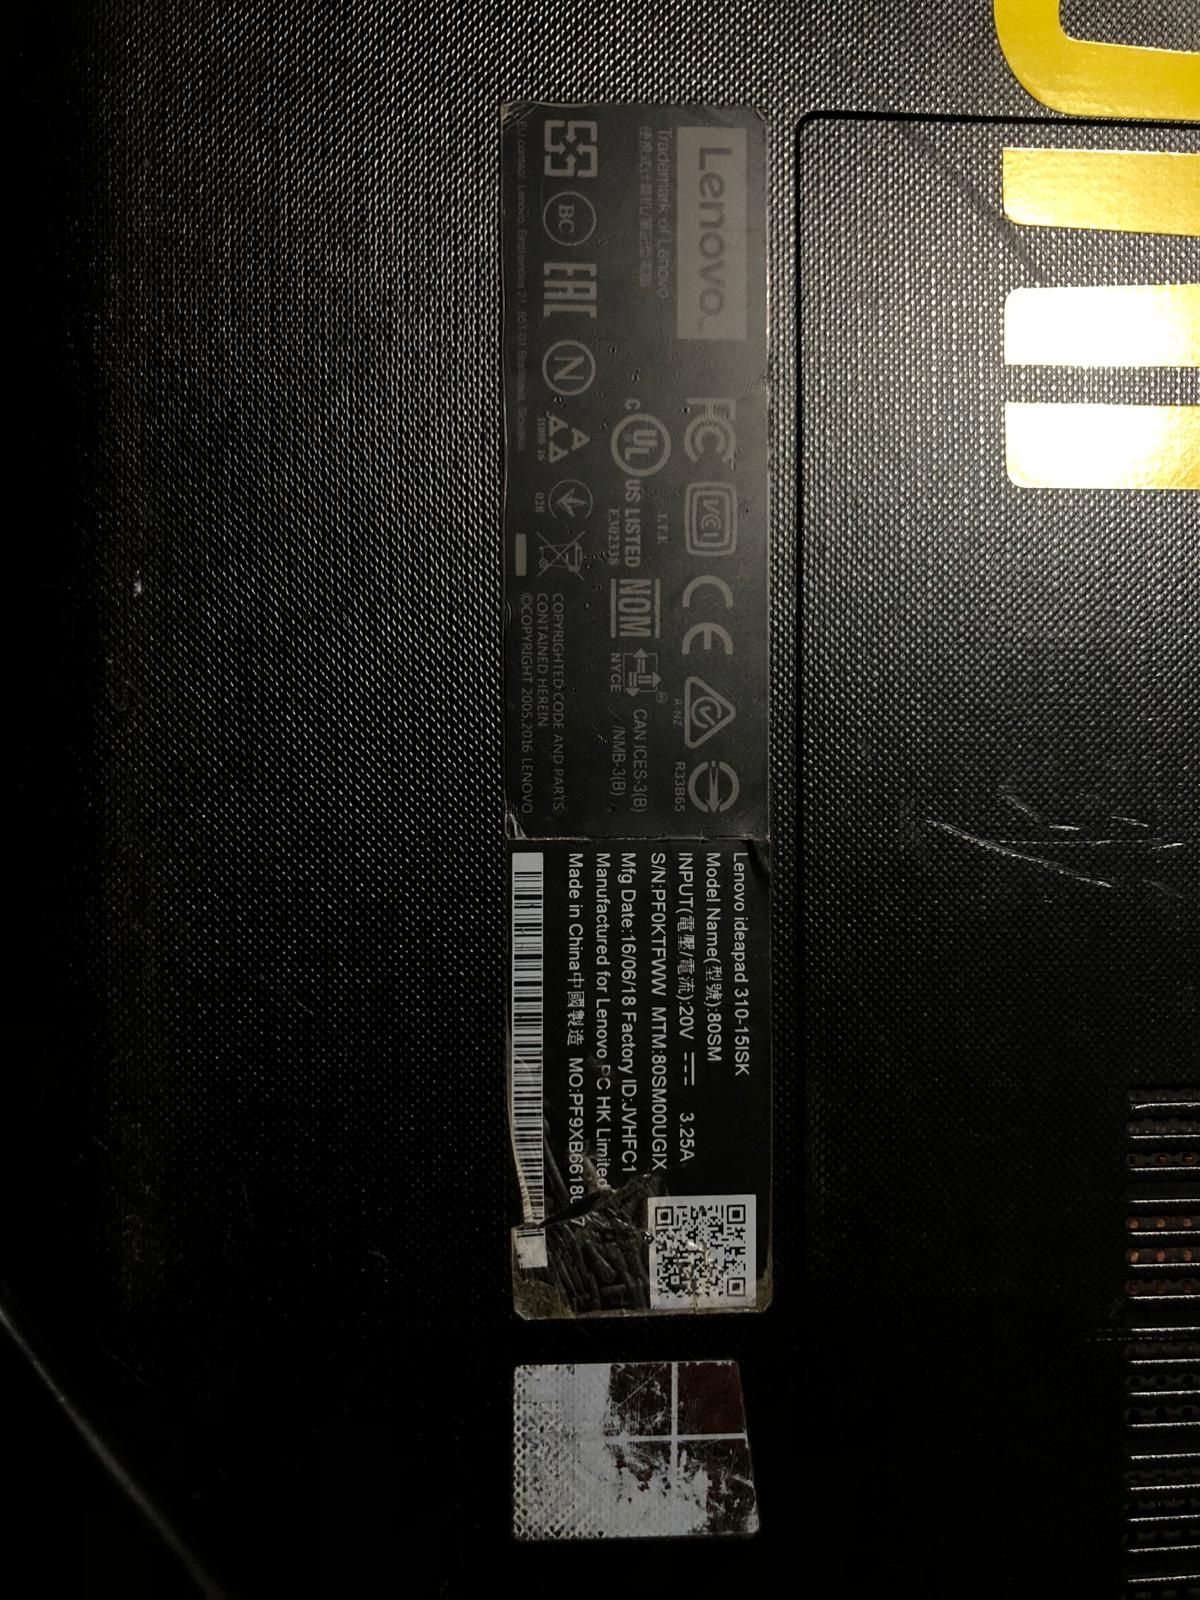 Lenovo ideapad 310 15isk cu i7-6500u, 8gb ram, 500gb hdd + rack intern